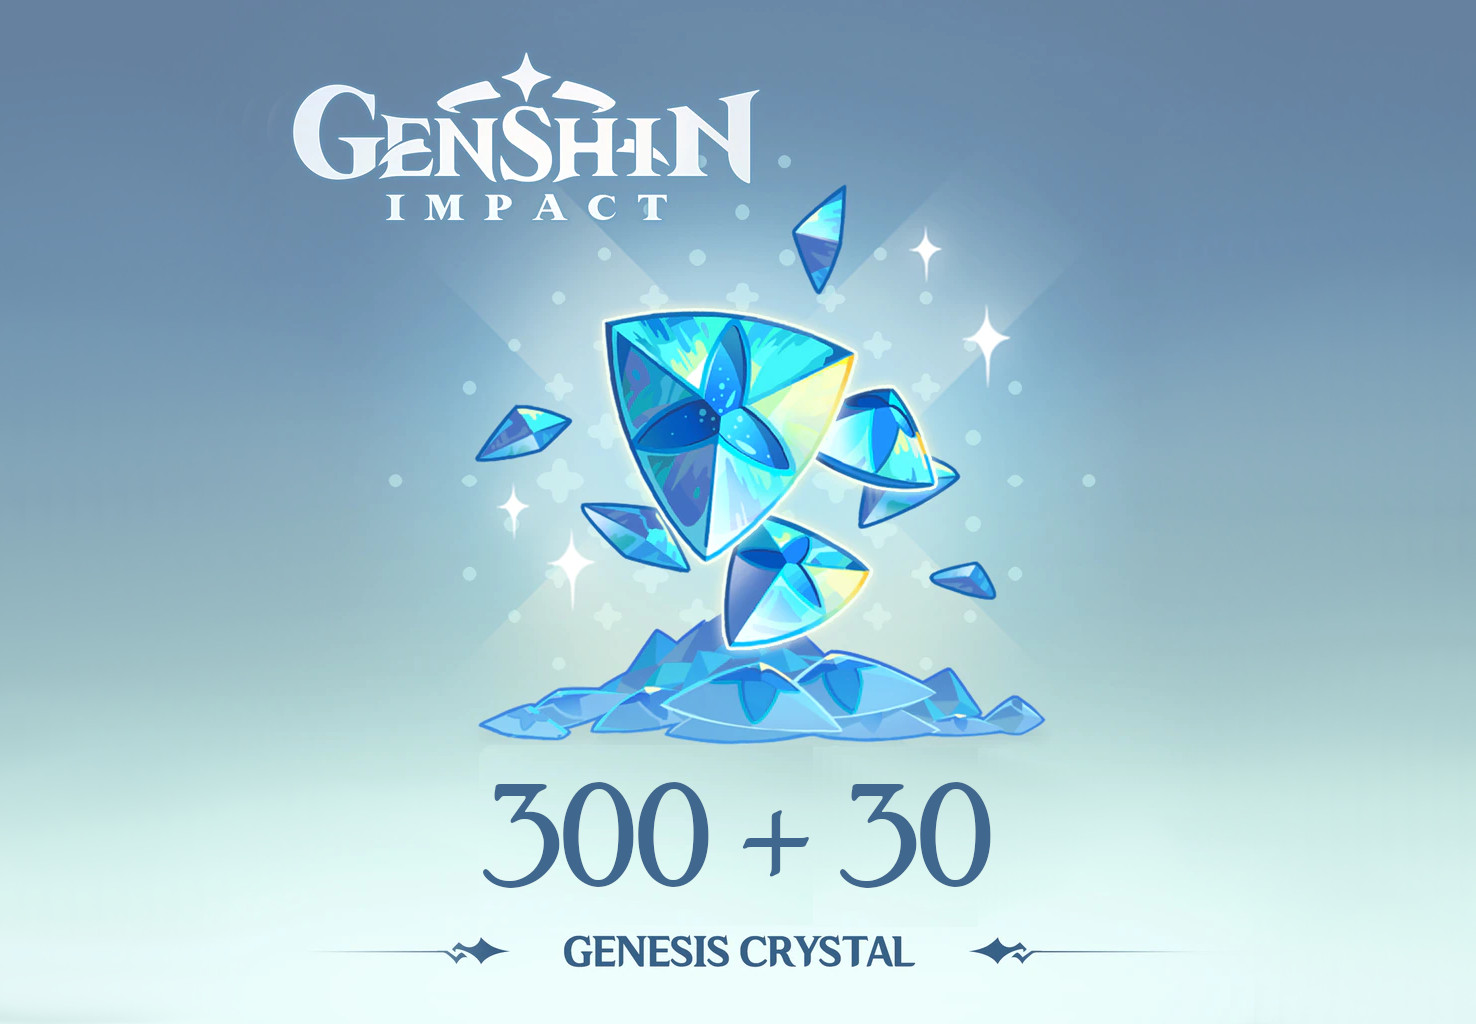 Genshin Impact - 300 + 30 Genesis Crystals Reidos Voucher 5.37 $